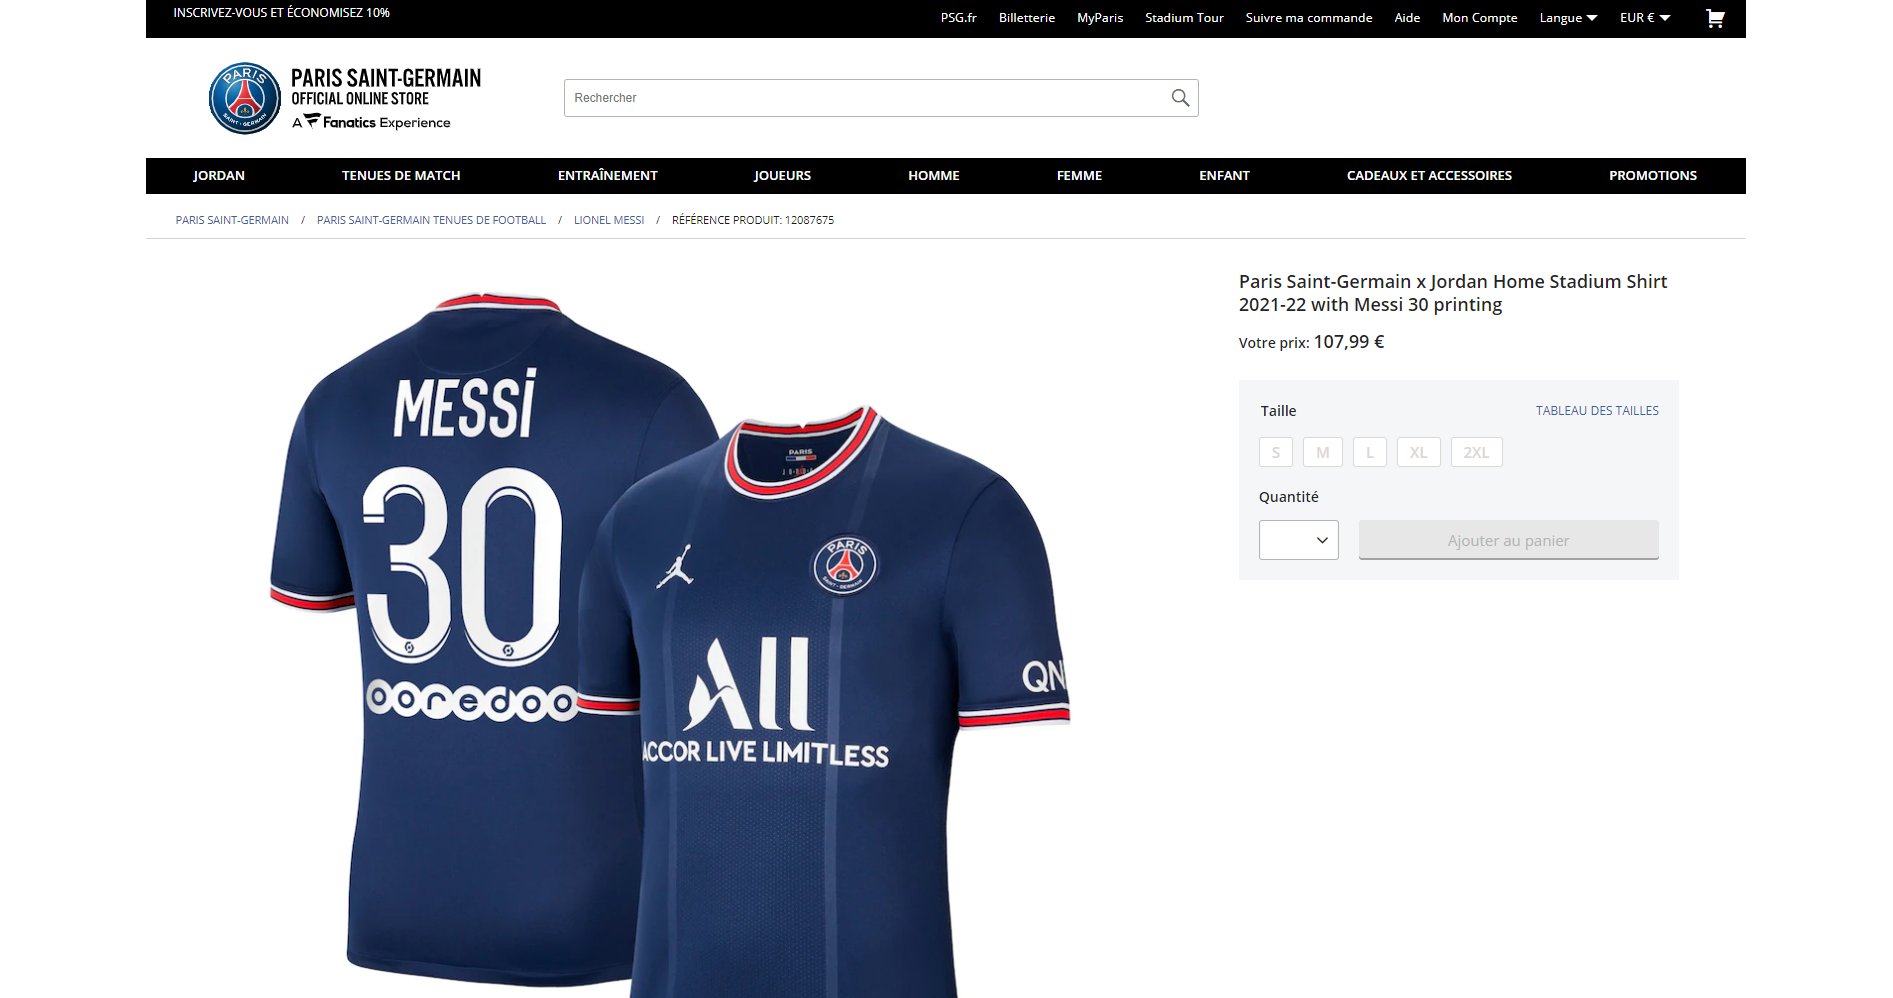 Jonas Adnan Giæver on X: 'The PSG shirt with 'MESSI 30' on the